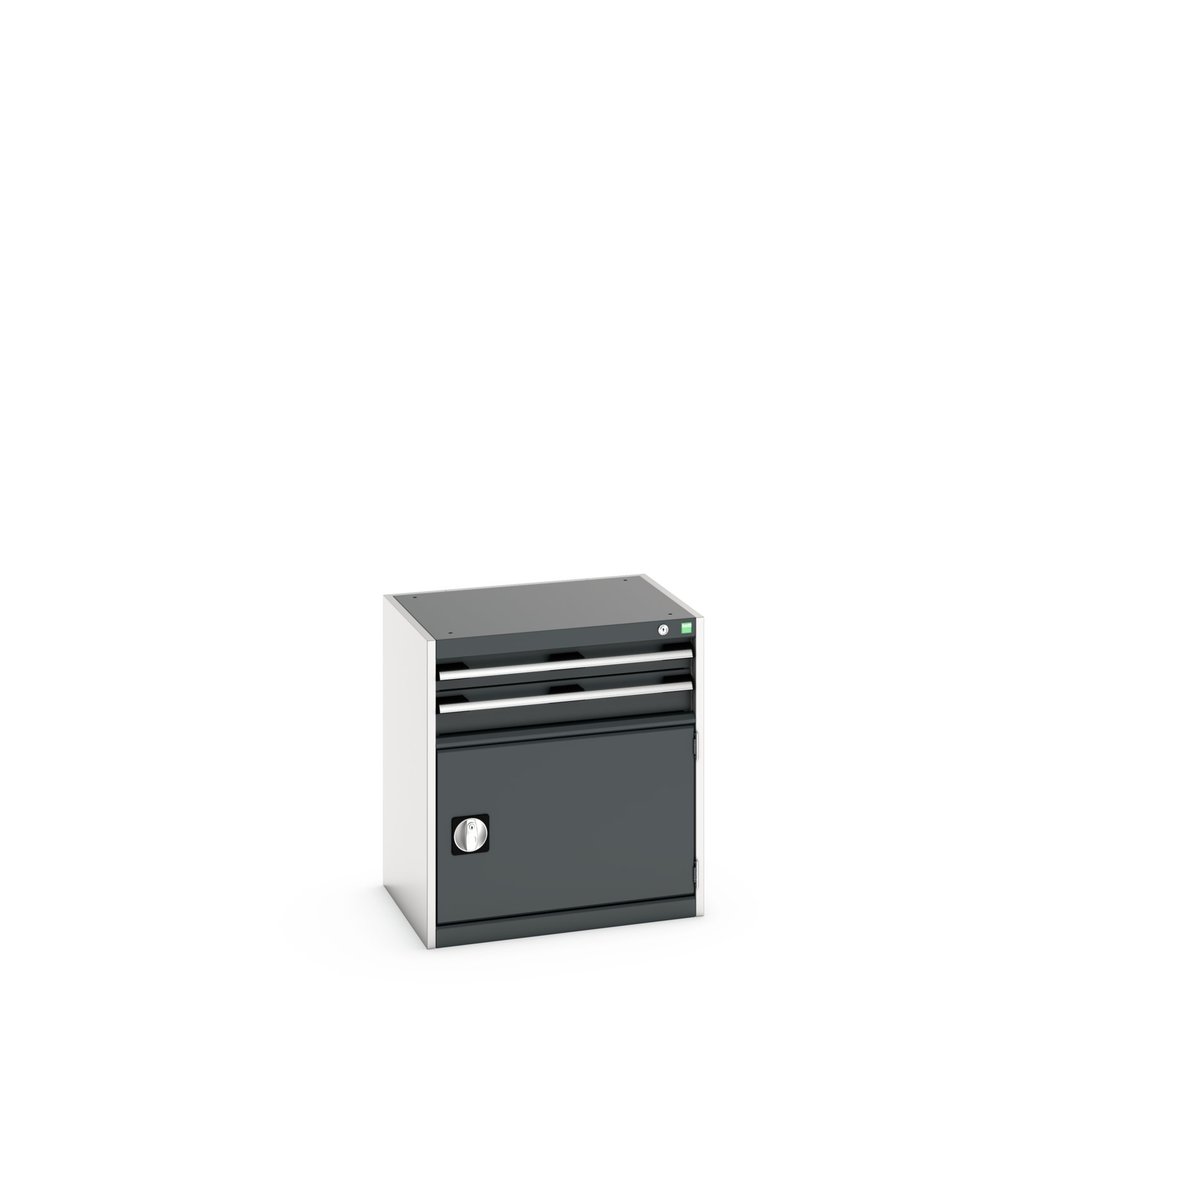 40011041. - cubio drawer-door cabinet